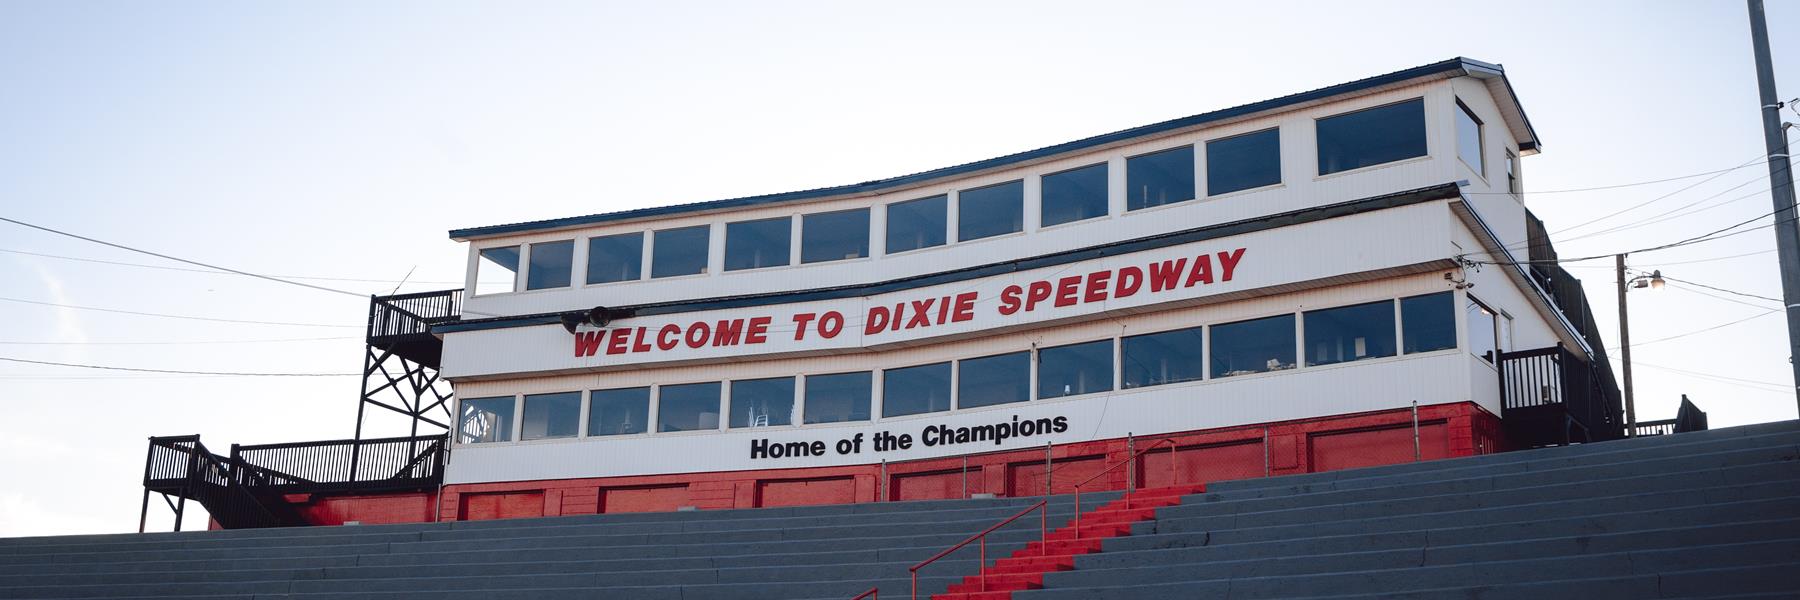 10/6/2012 - Dixie Speedway